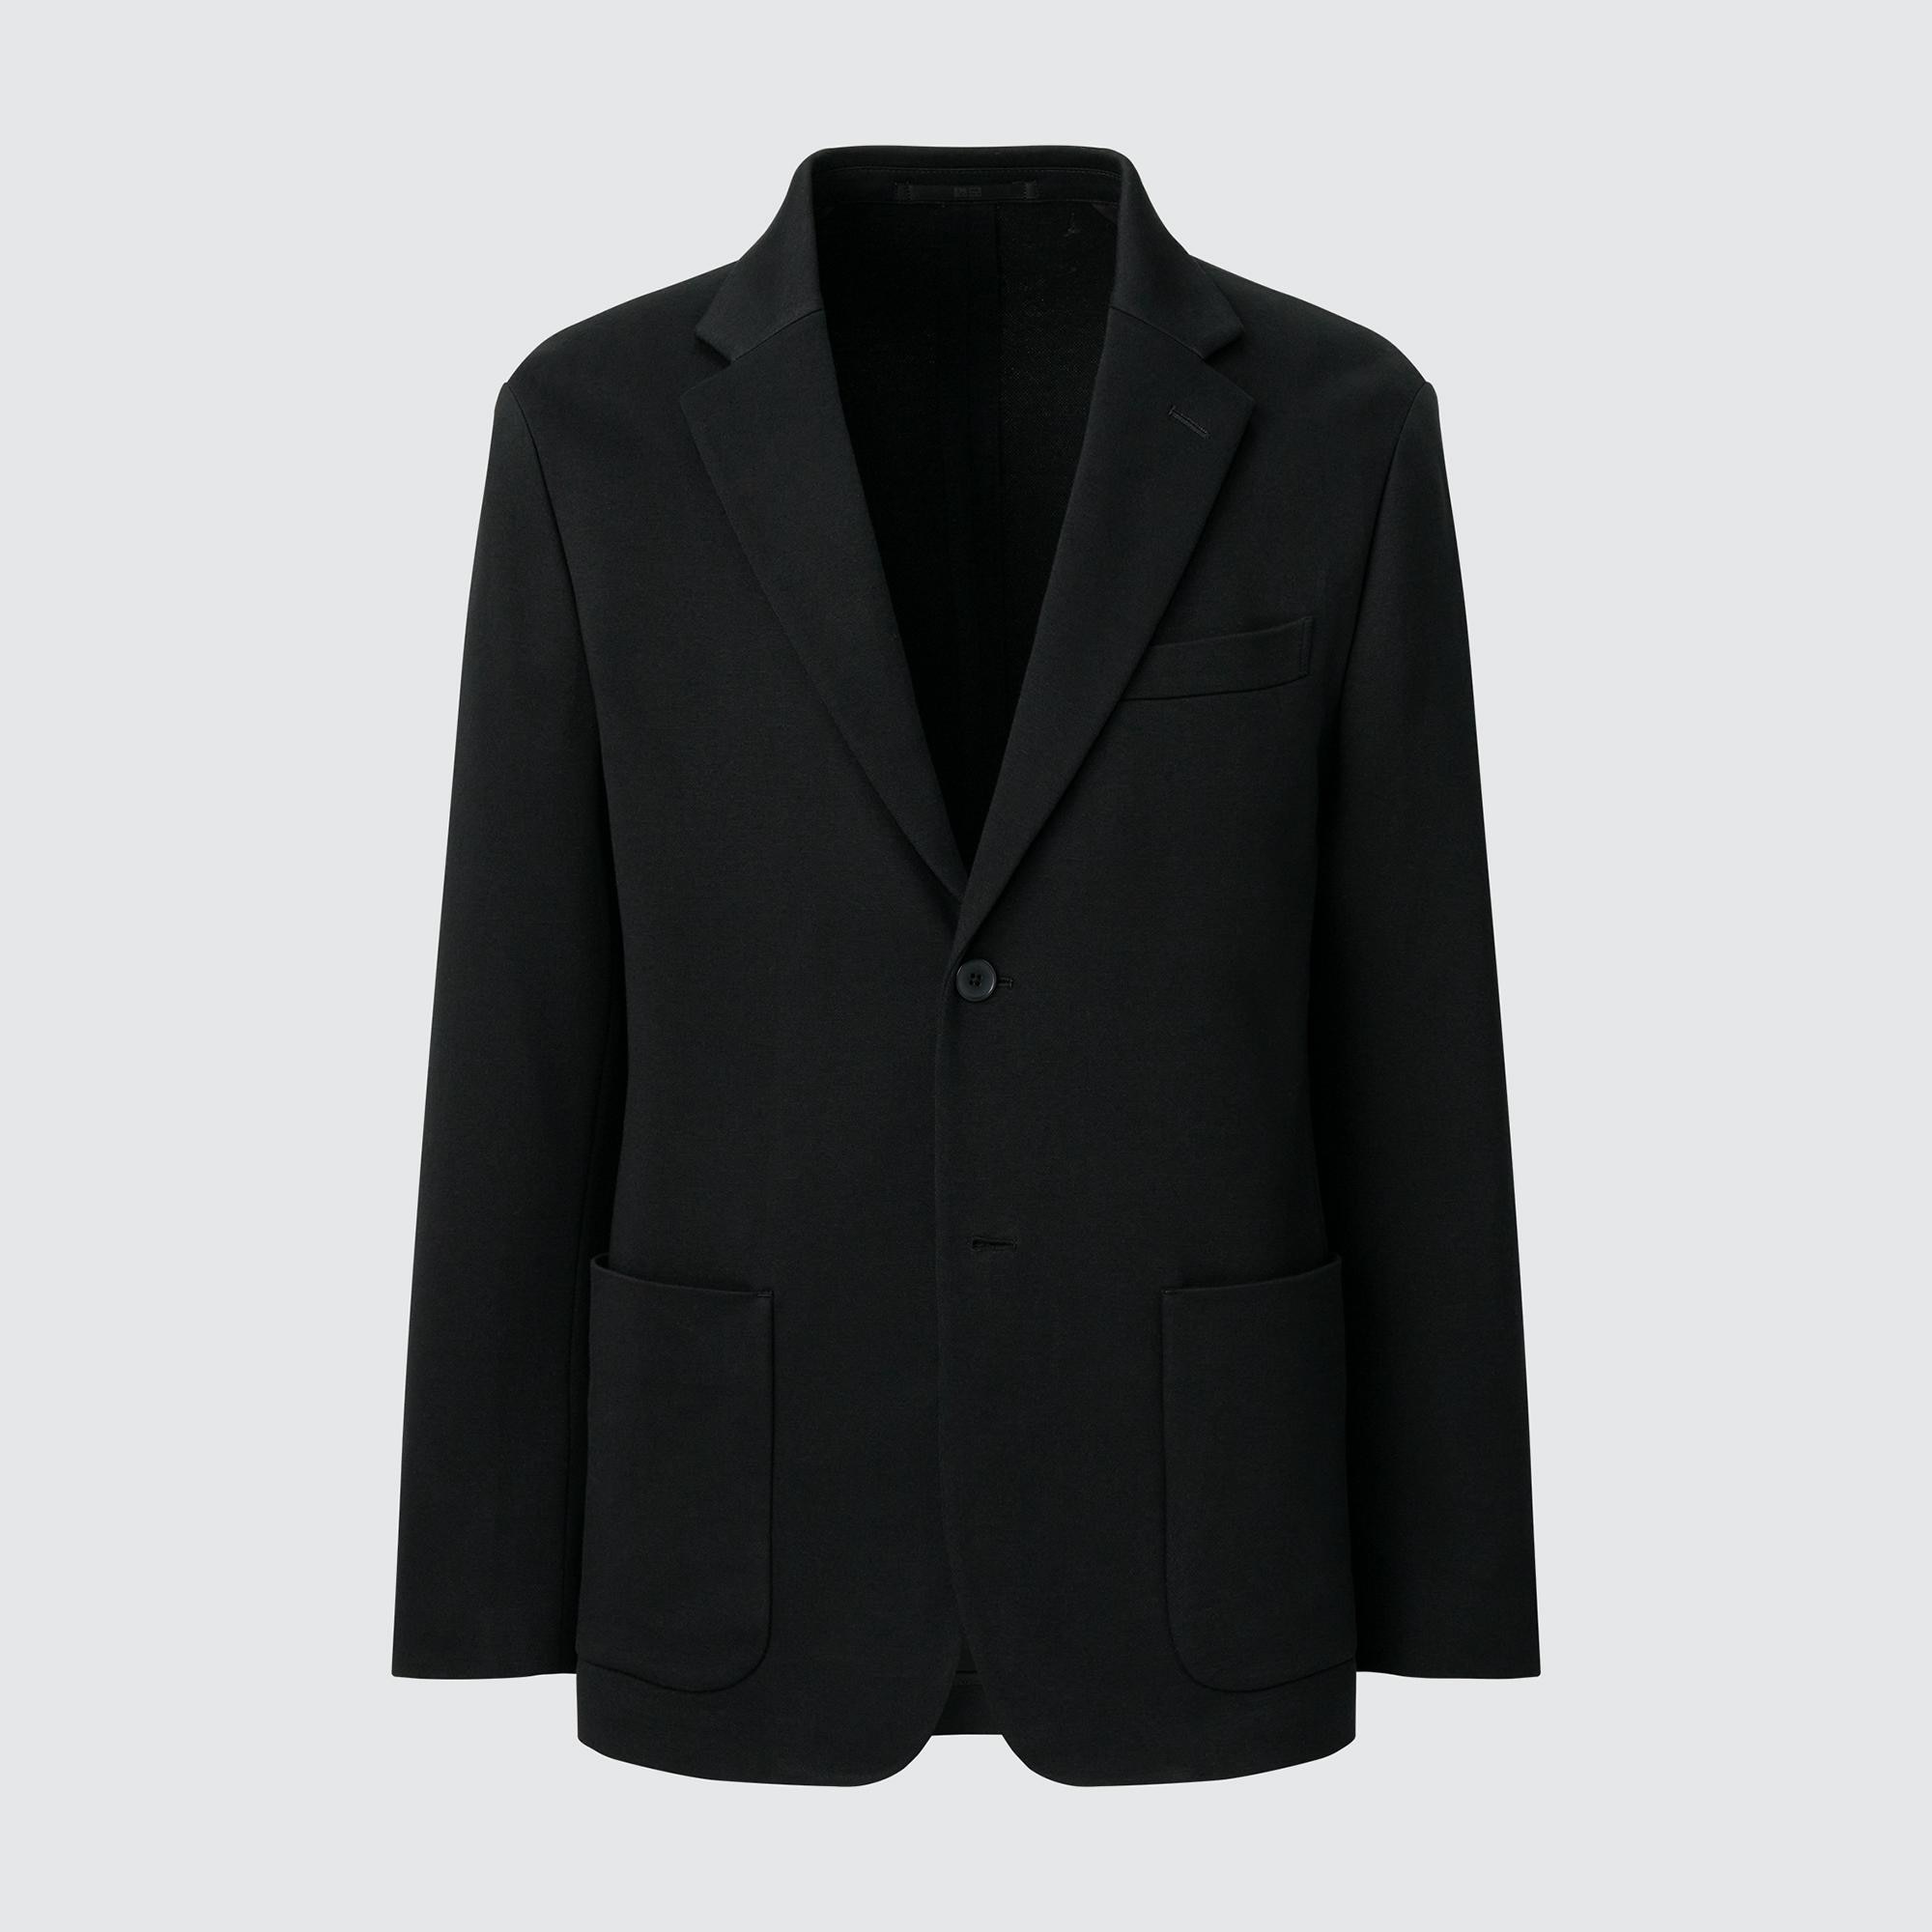 Куртка UNIQLO Comfort 2B с нагрудным карманом, черный куртка uniqlo comfort 2b из хлопка темно серый